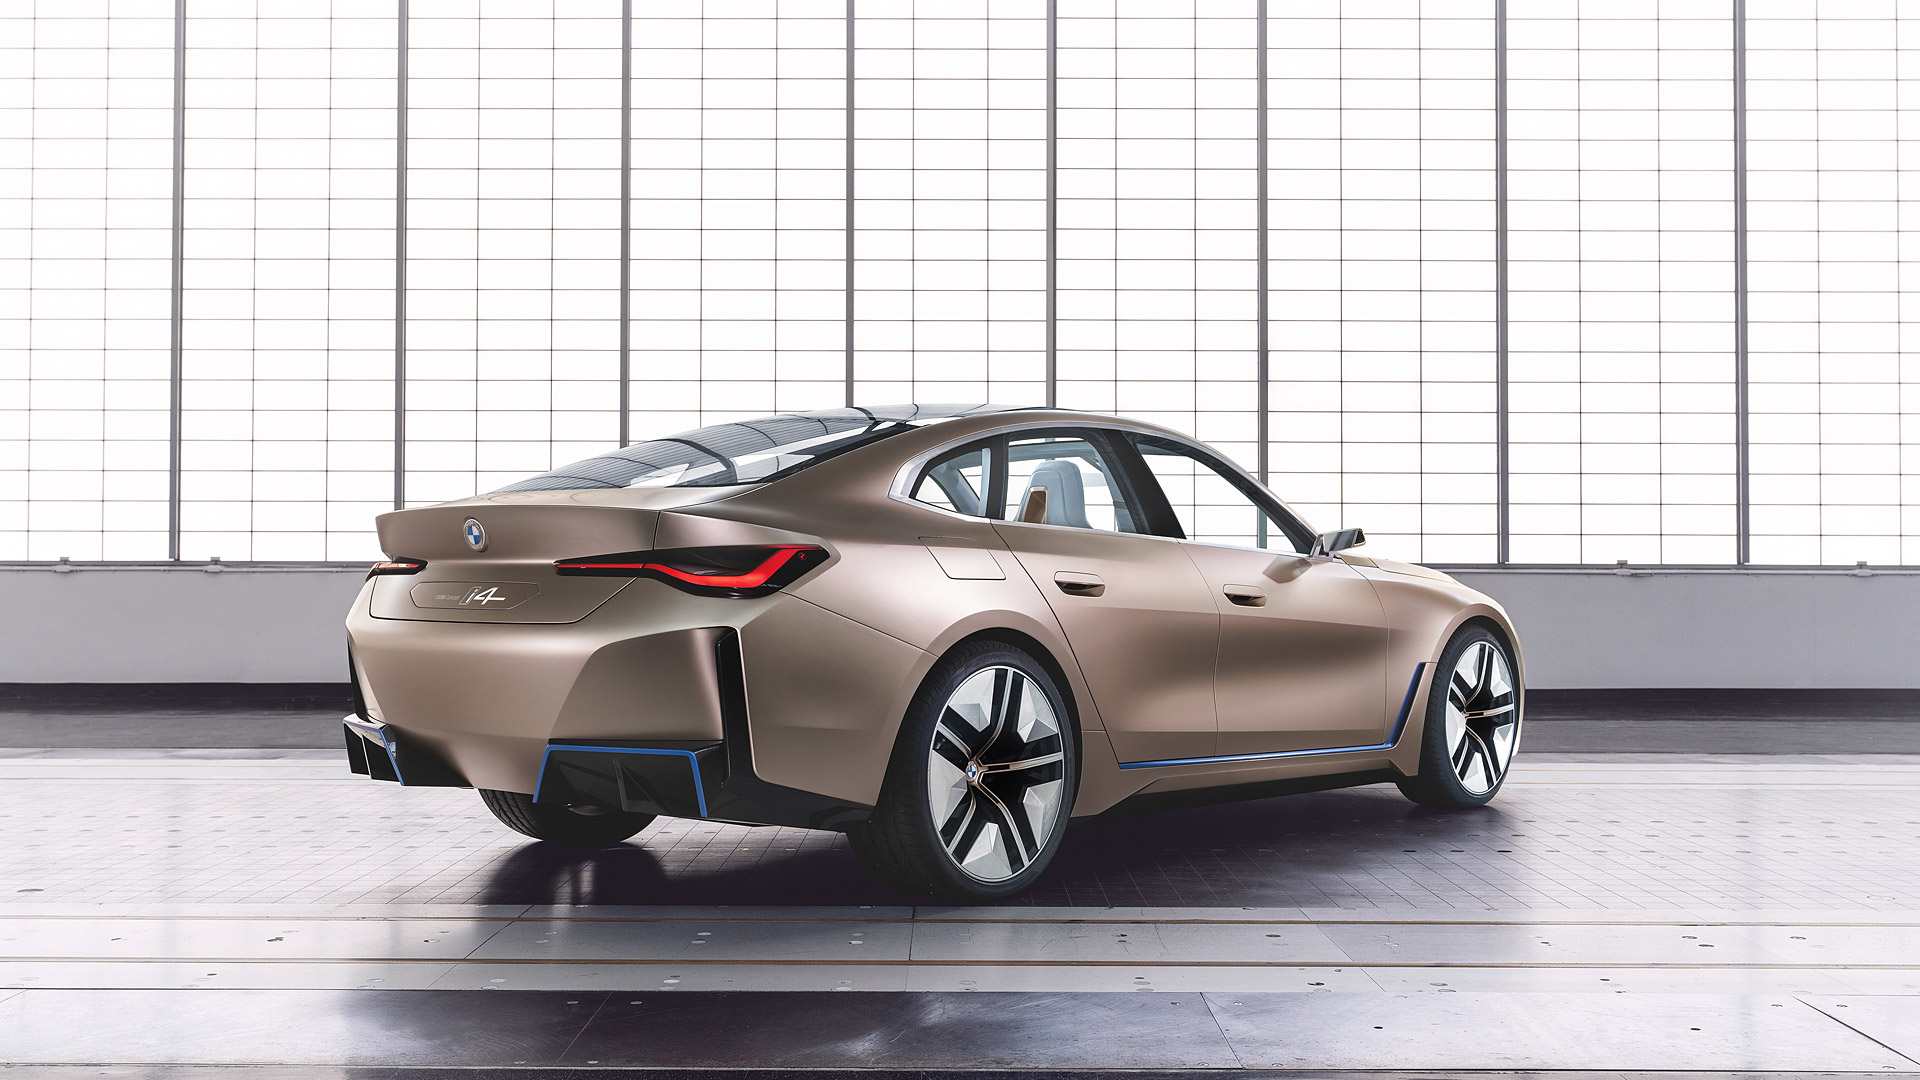 2020 BMW I4 Concept